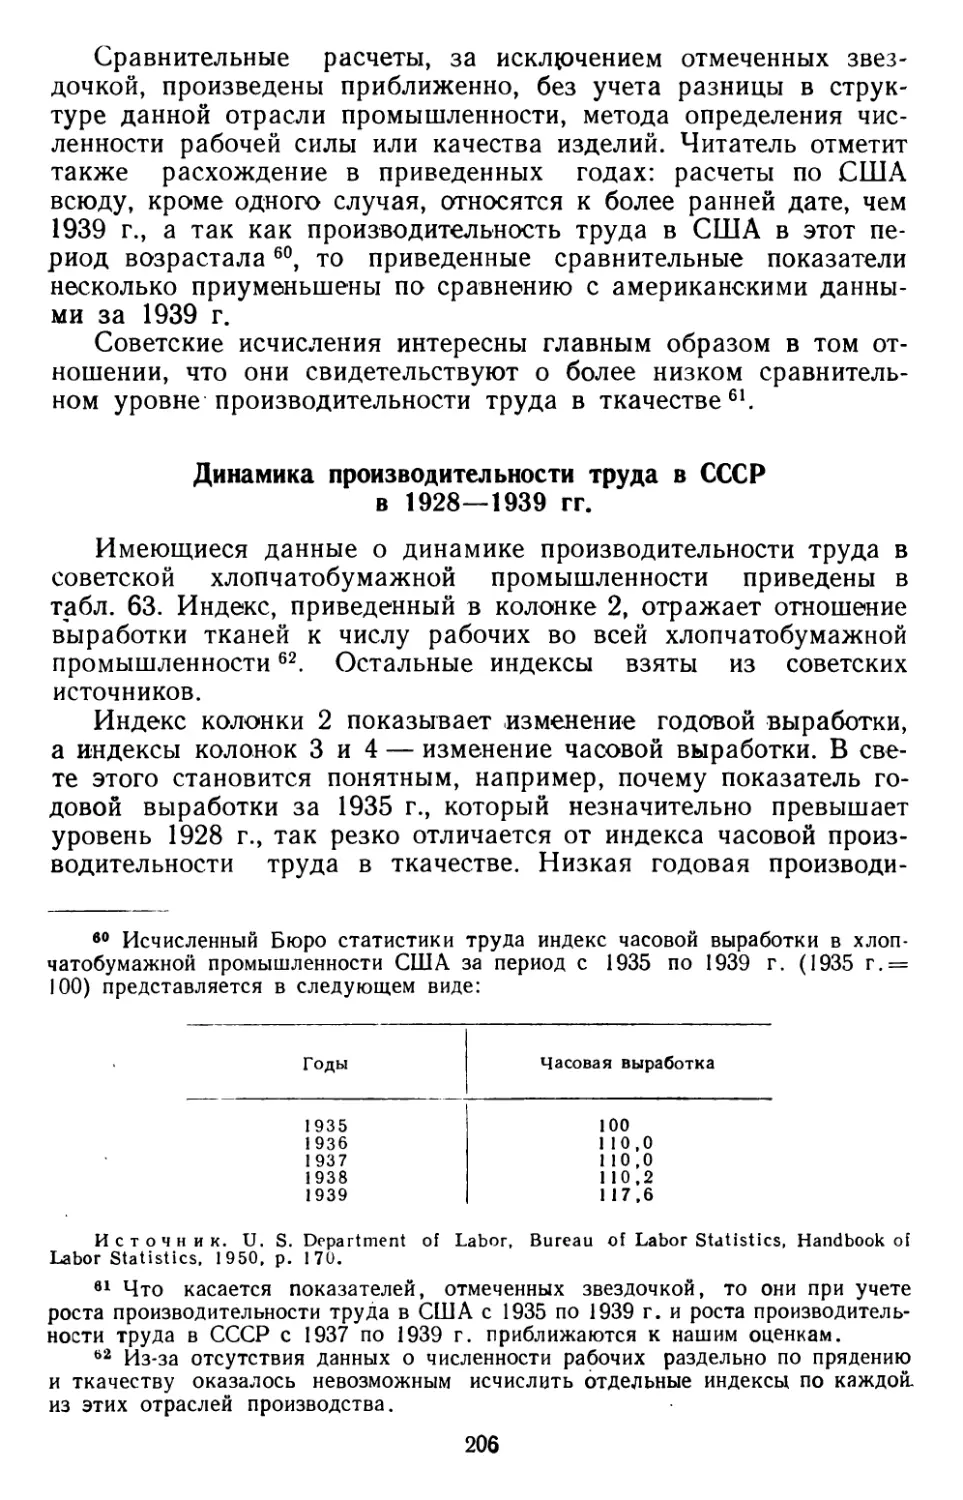 Динамика производительности труда в СССР в 1928—1939 гг